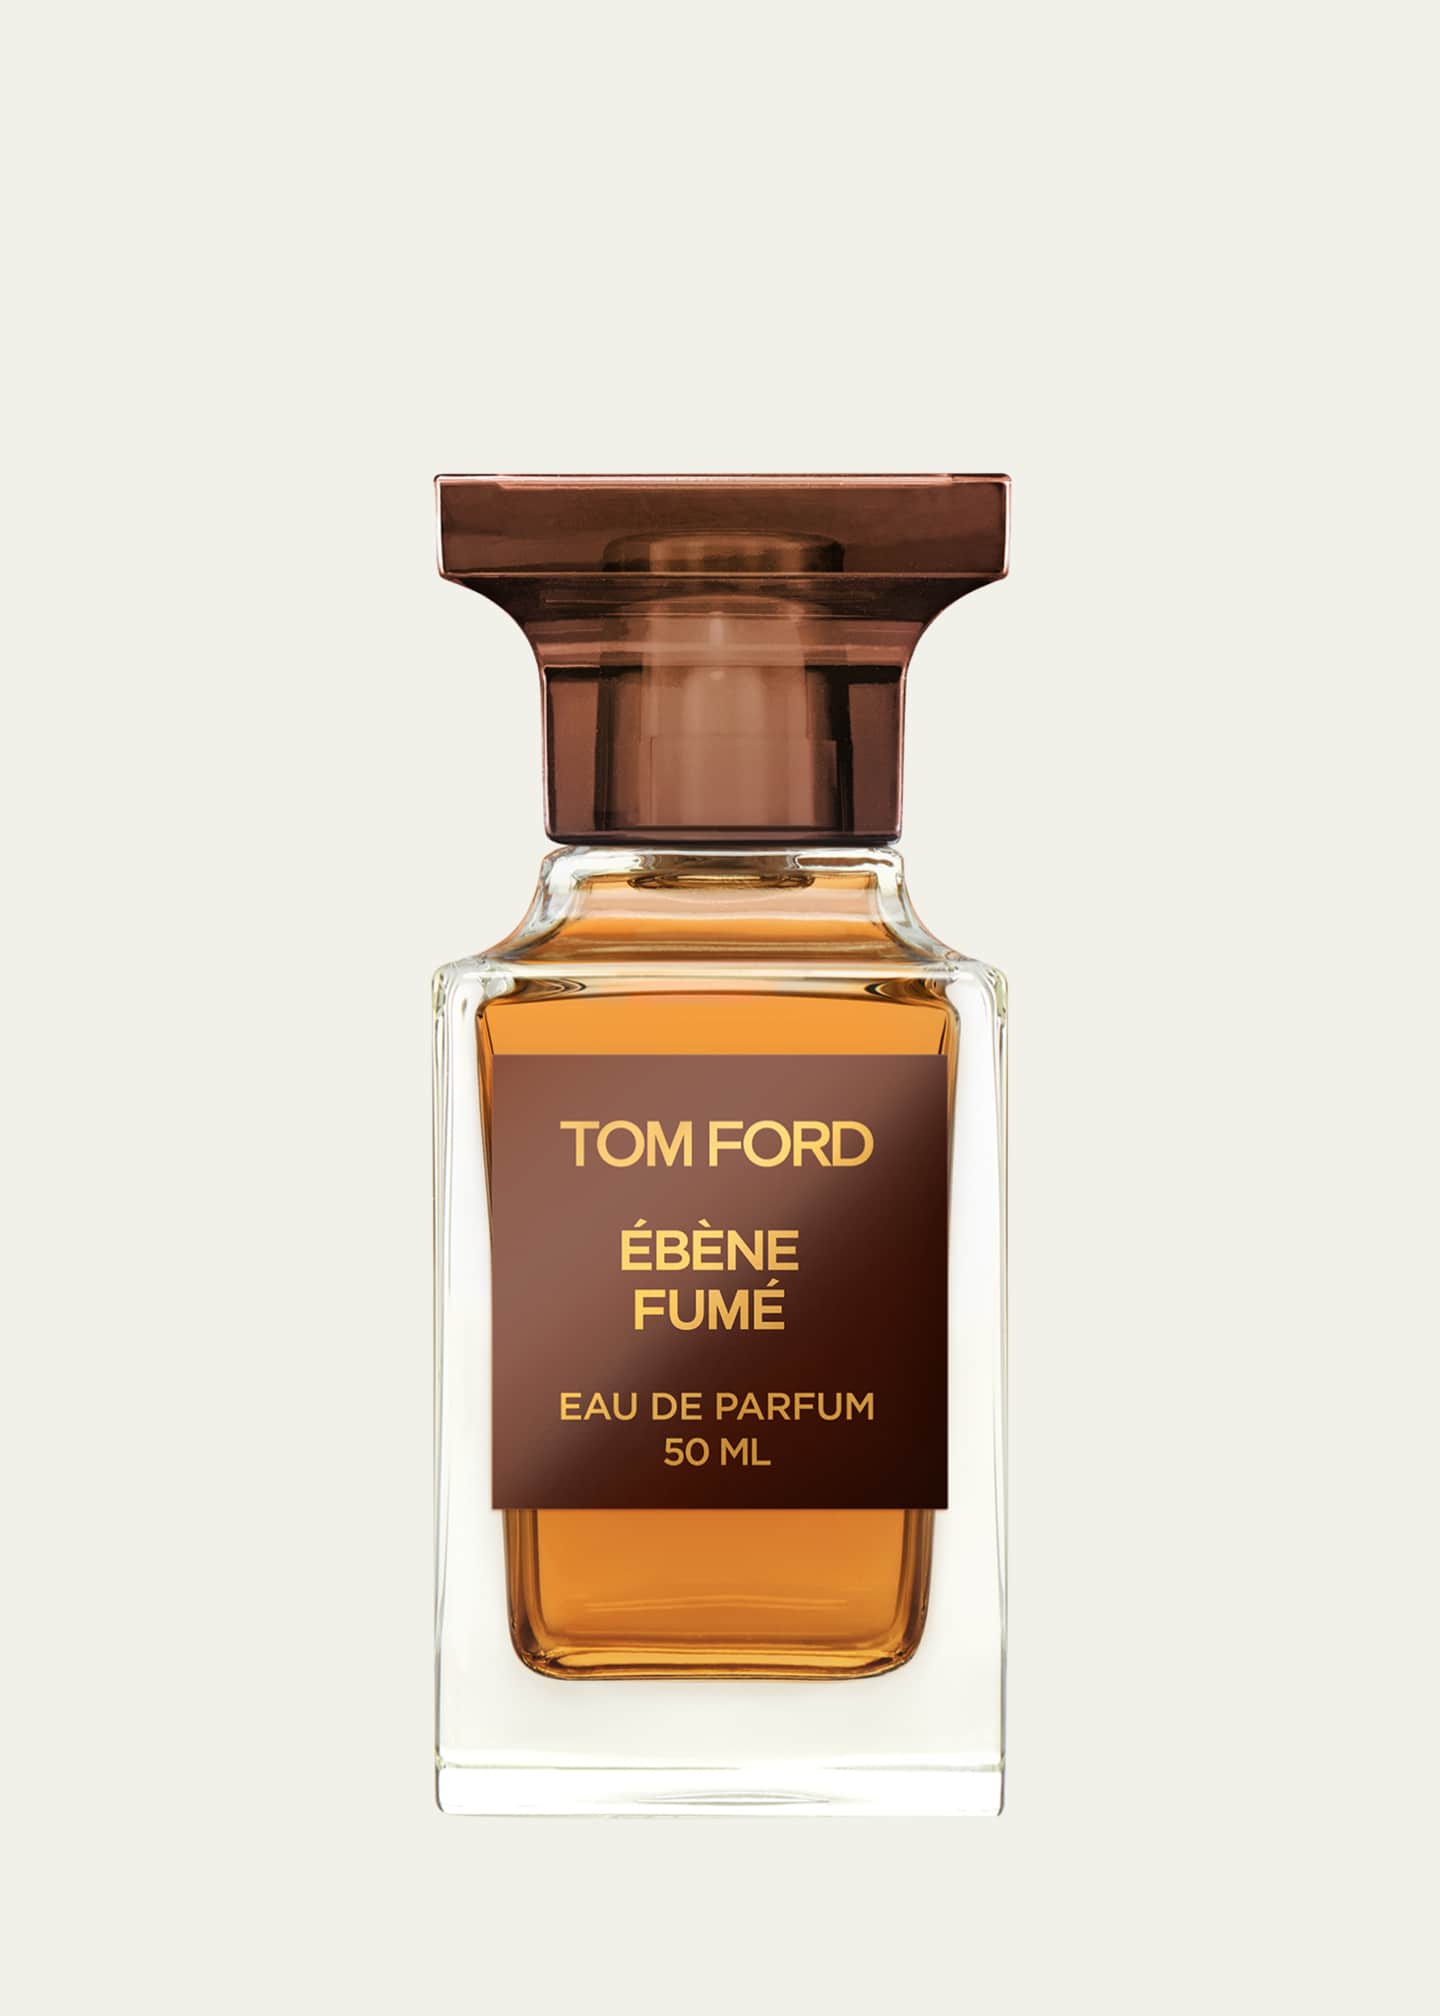 TOM FORD Ebene Fume Eau de Parfum, 1.7 oz. - Bergdorf Goodman